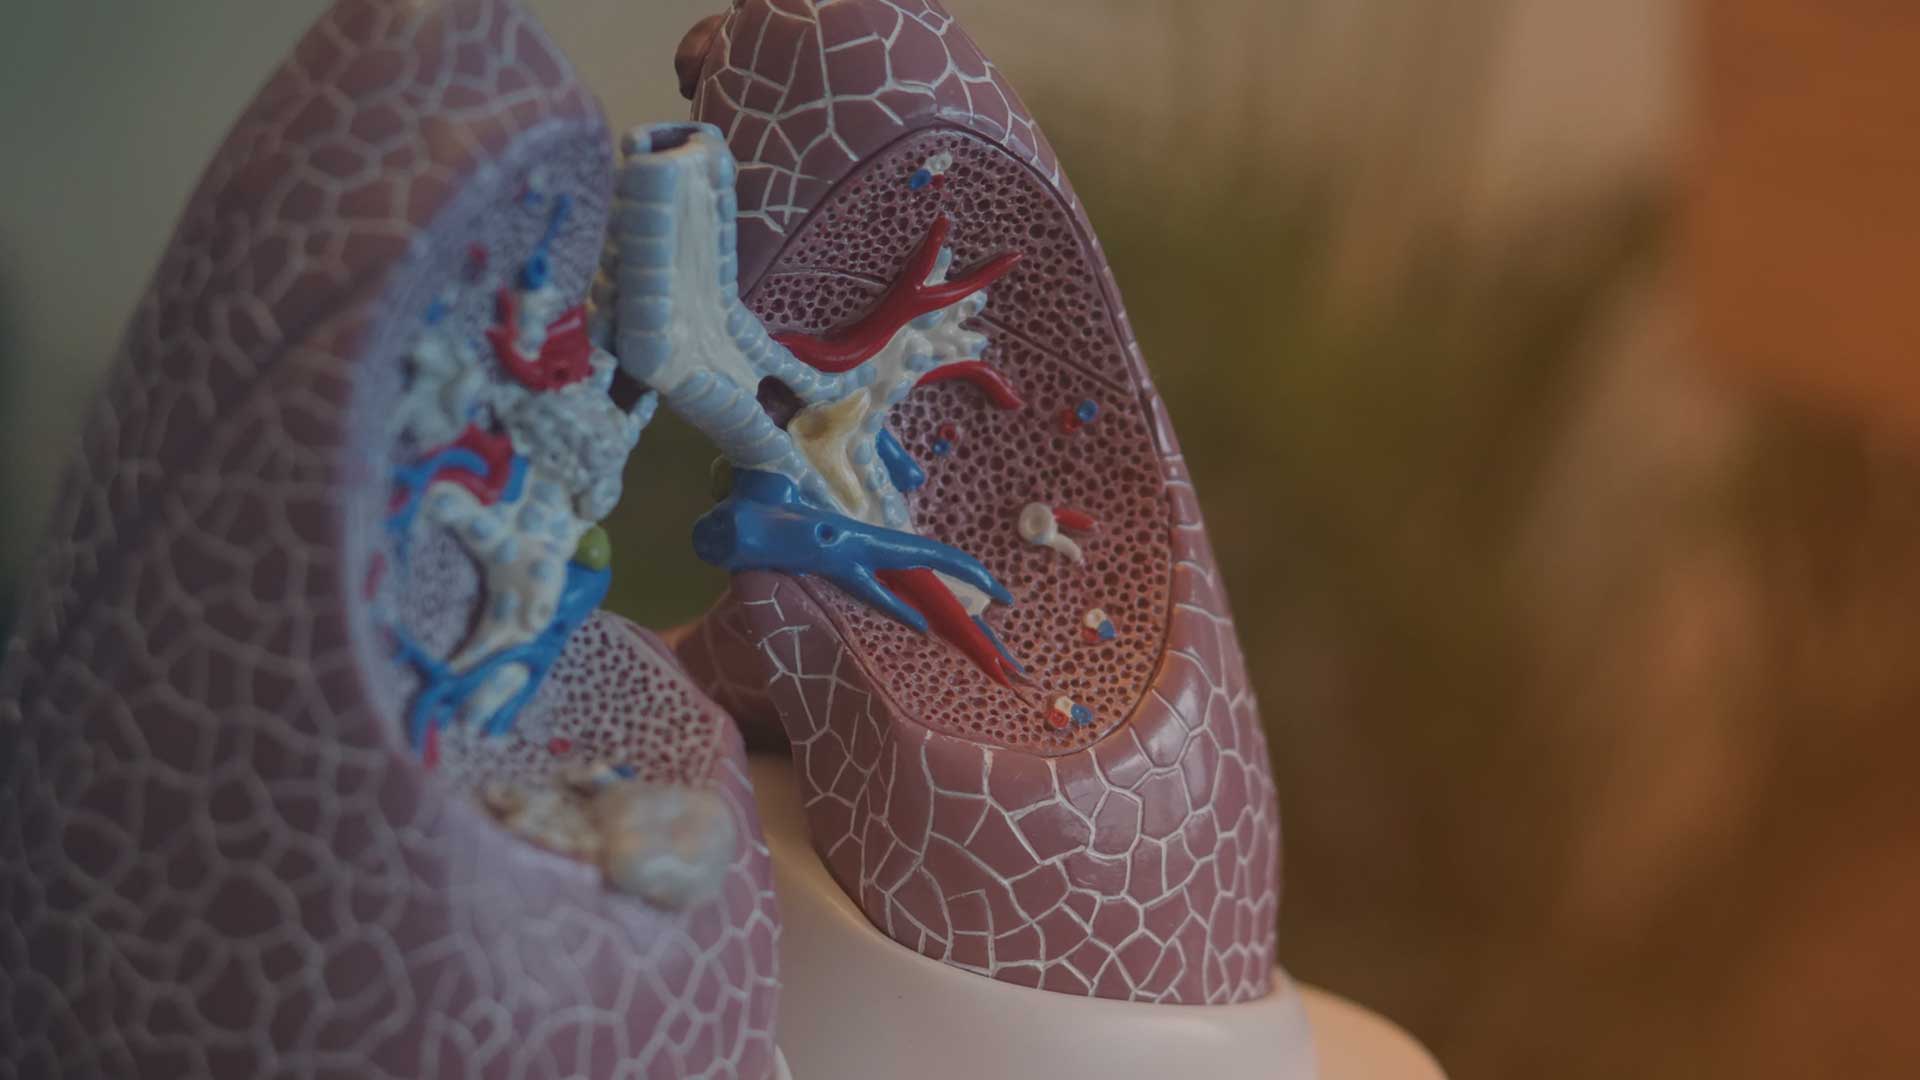 Die ELF (European Lung Foundation) stellt in vielen Sprachen zahlreiche Themen rund um die Lunge vor